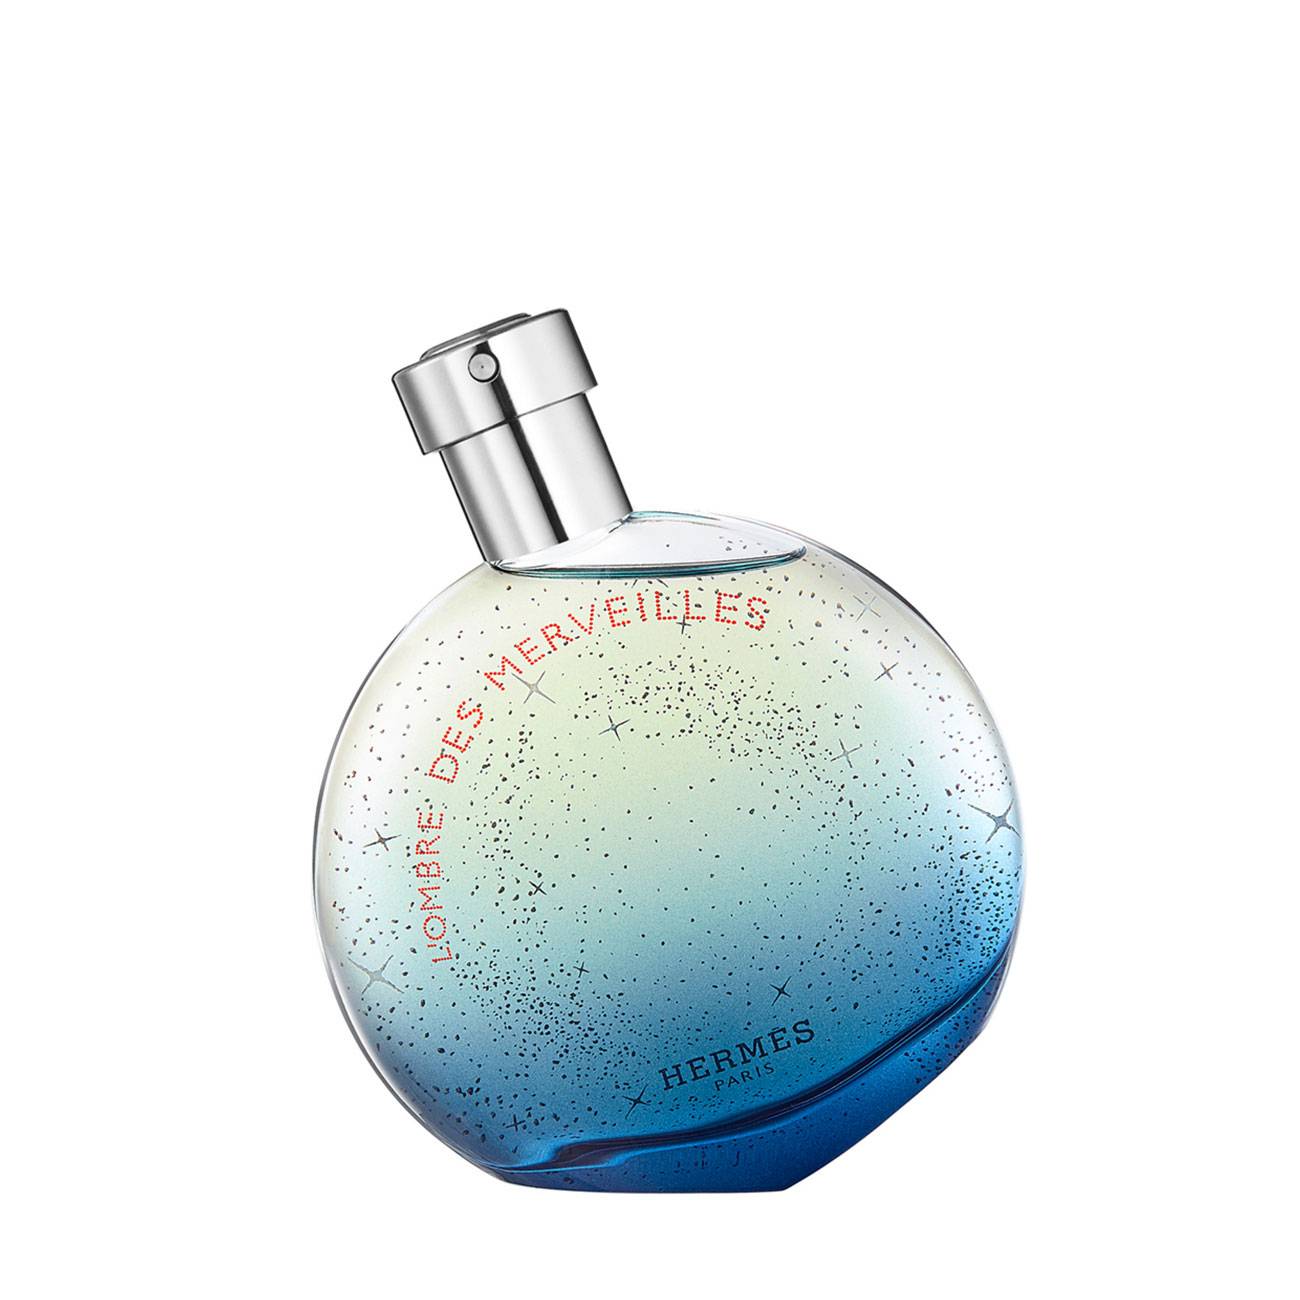 Apa de Parfum Hermes L’Ombre des Merveilles 50ml cu comanda online